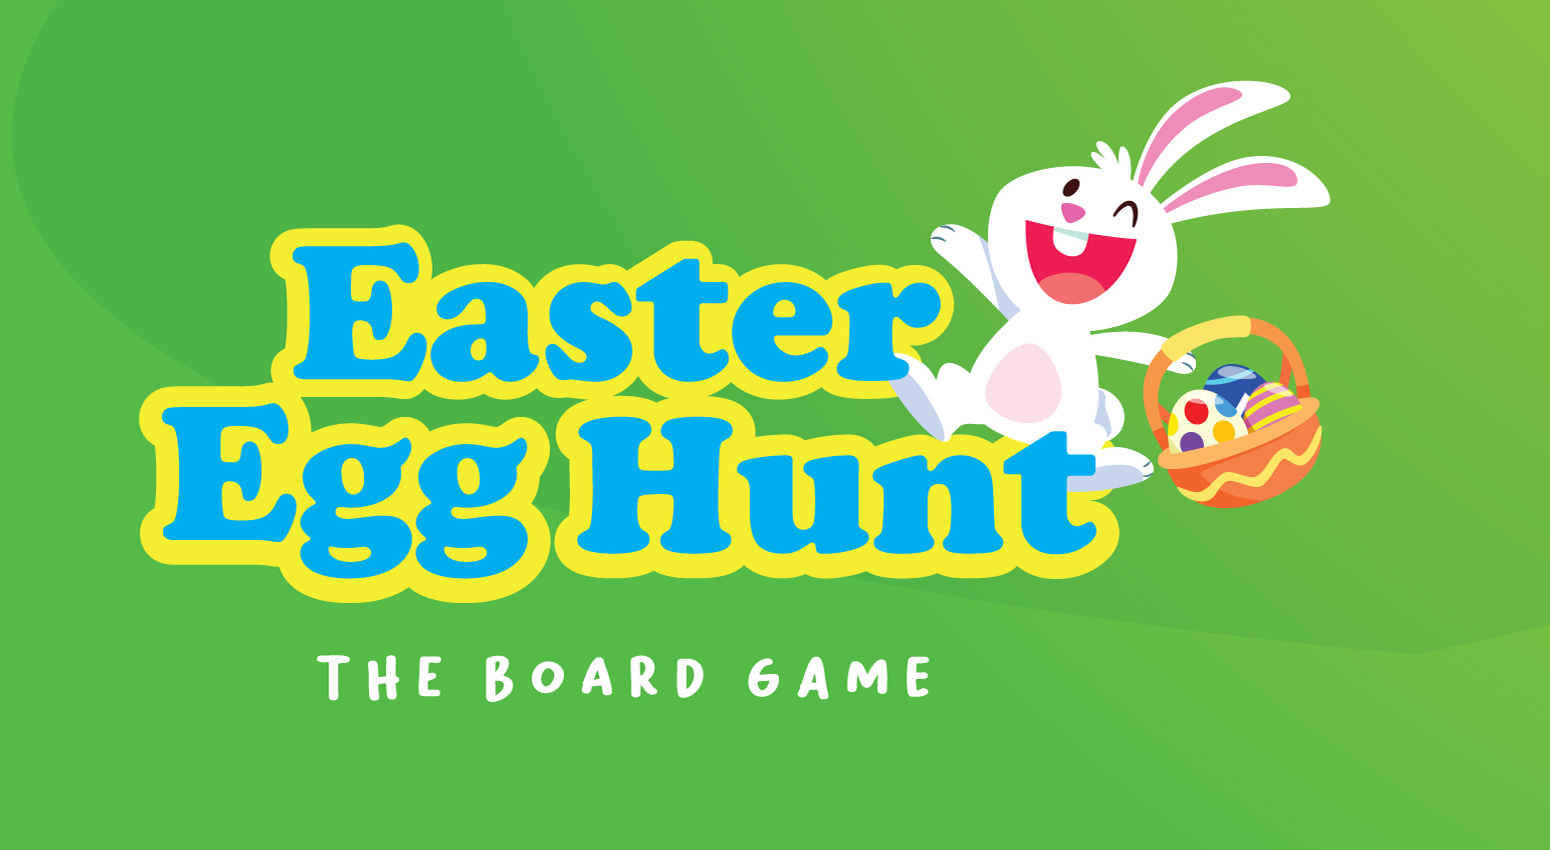 Easter Egg Hunt game